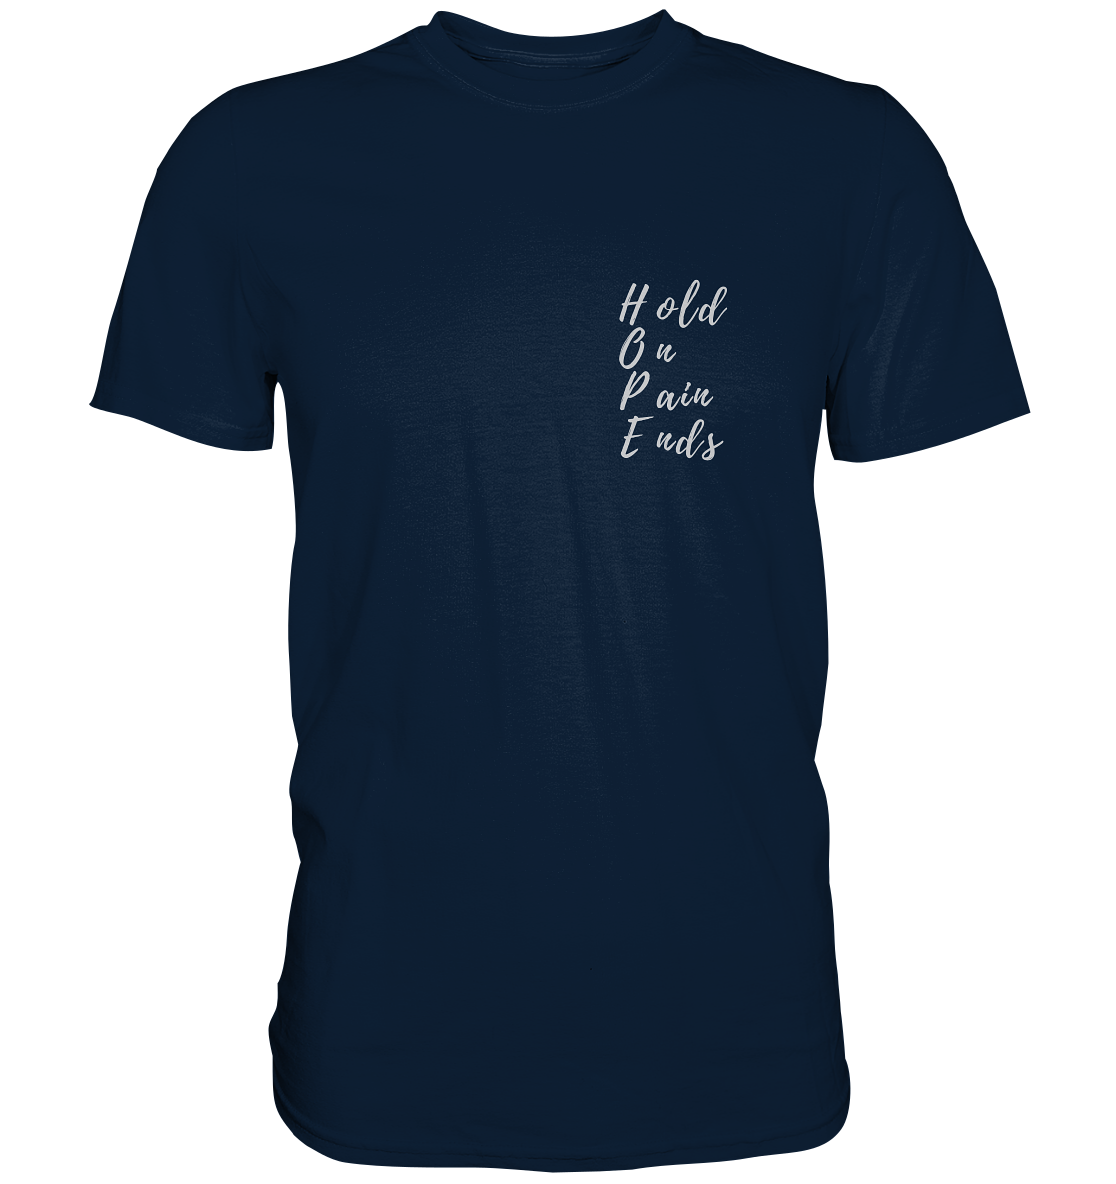 T-Shirt mit Aufdruck, print "Hold on - pain ends", blau, blue